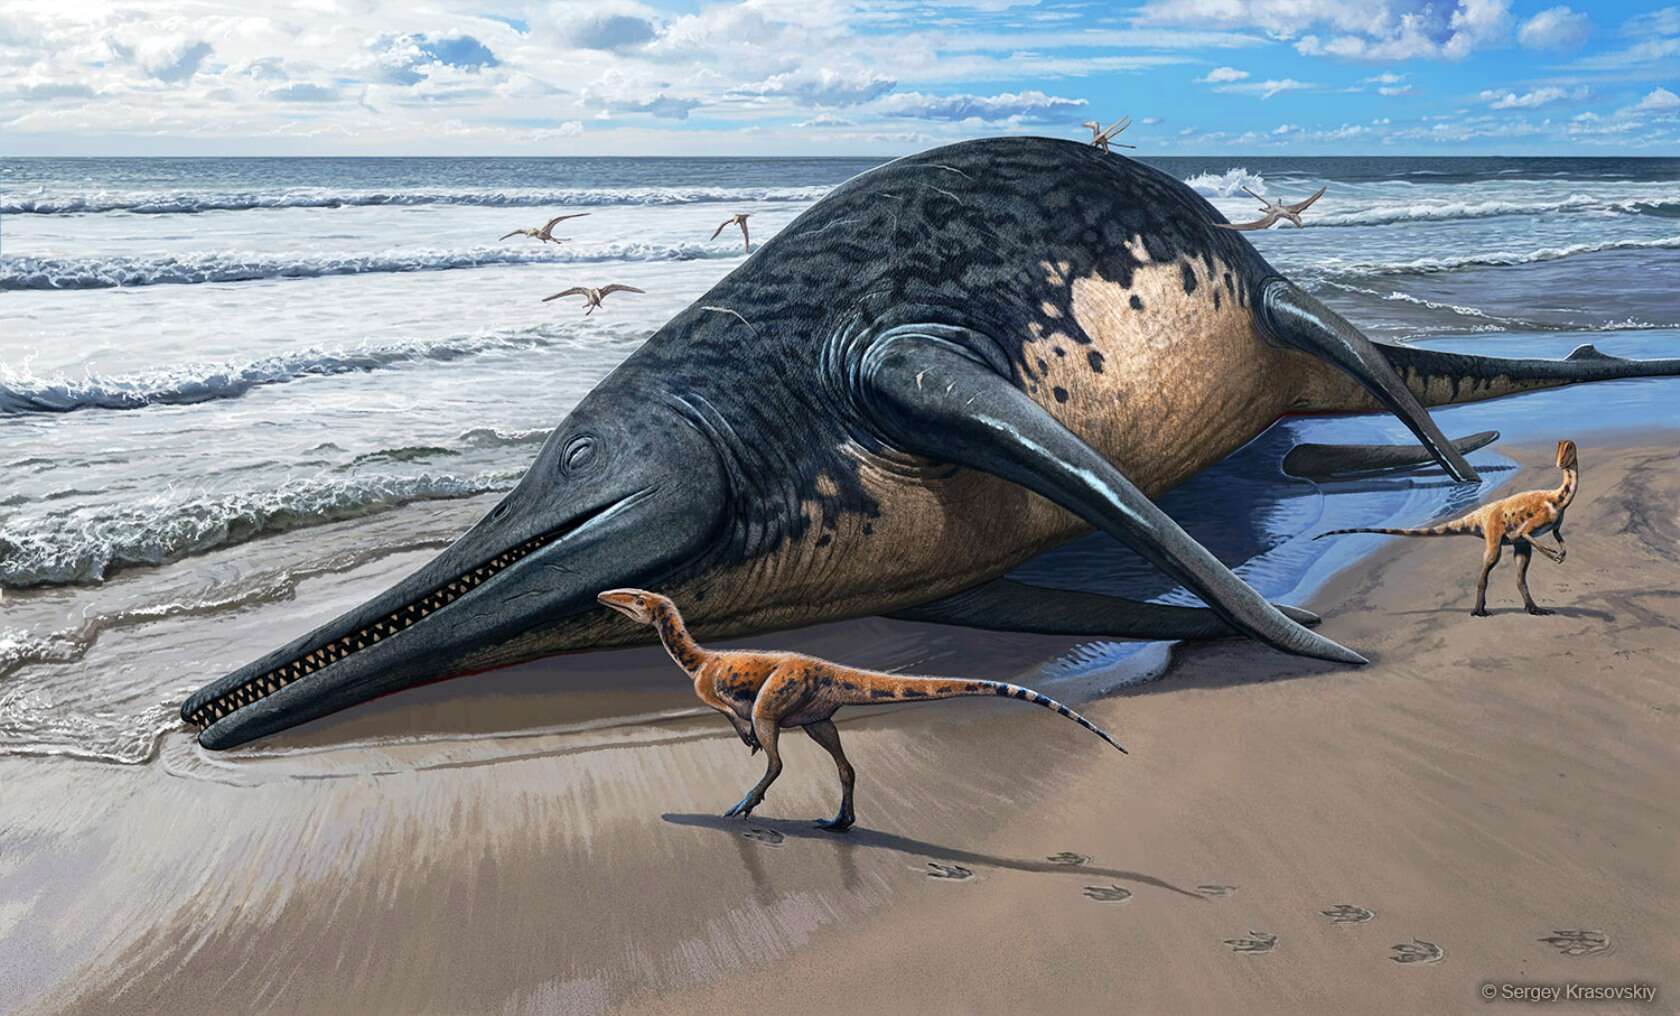 Misschien wel het grootste mariene reptiel dat bekend is uit het dinosaurustijdperk is ontdekt